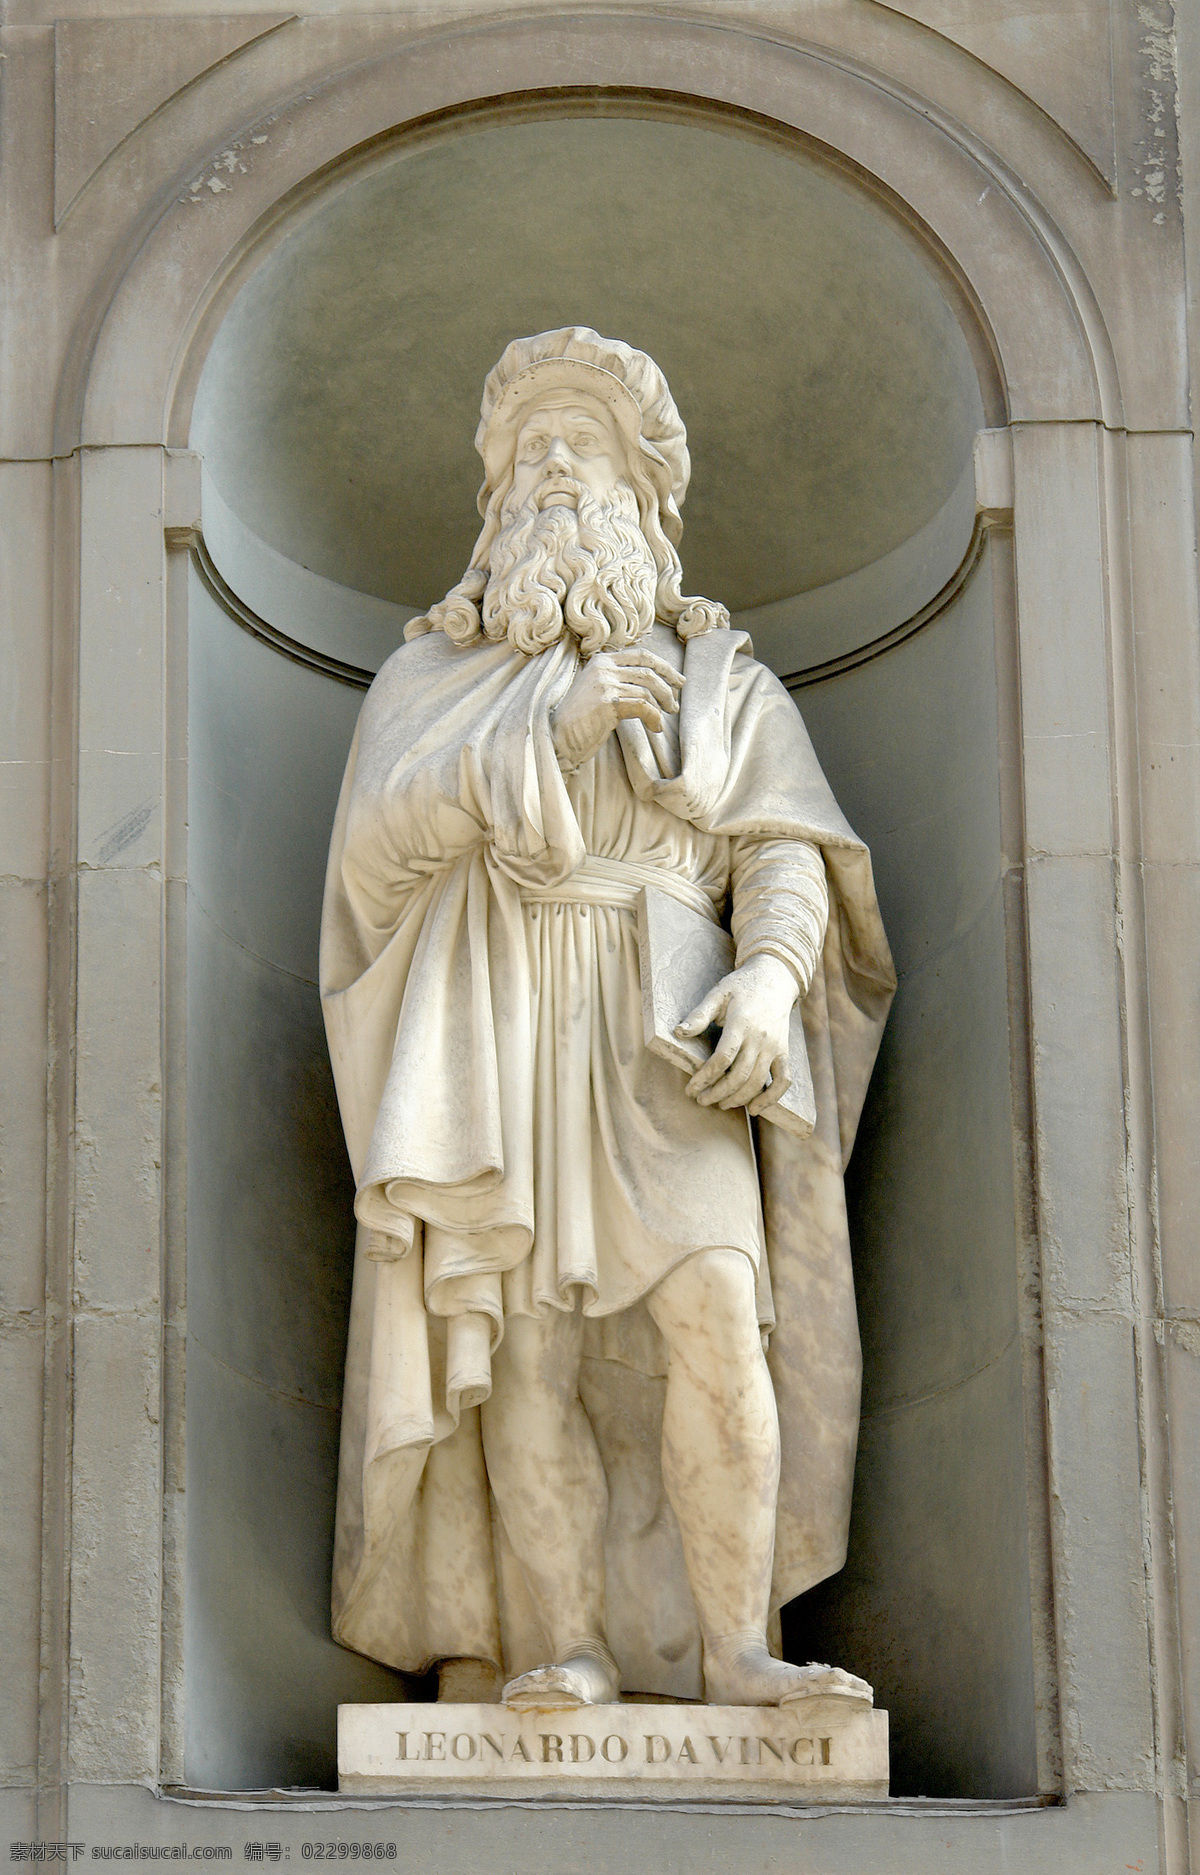 意大利 雕塑 列奥 纳多 达芬奇 佛罗伦萨 文艺复兴三杰 艺术之父 蒙娜丽莎 大理石 文化艺术 美术绘画 摄影图库